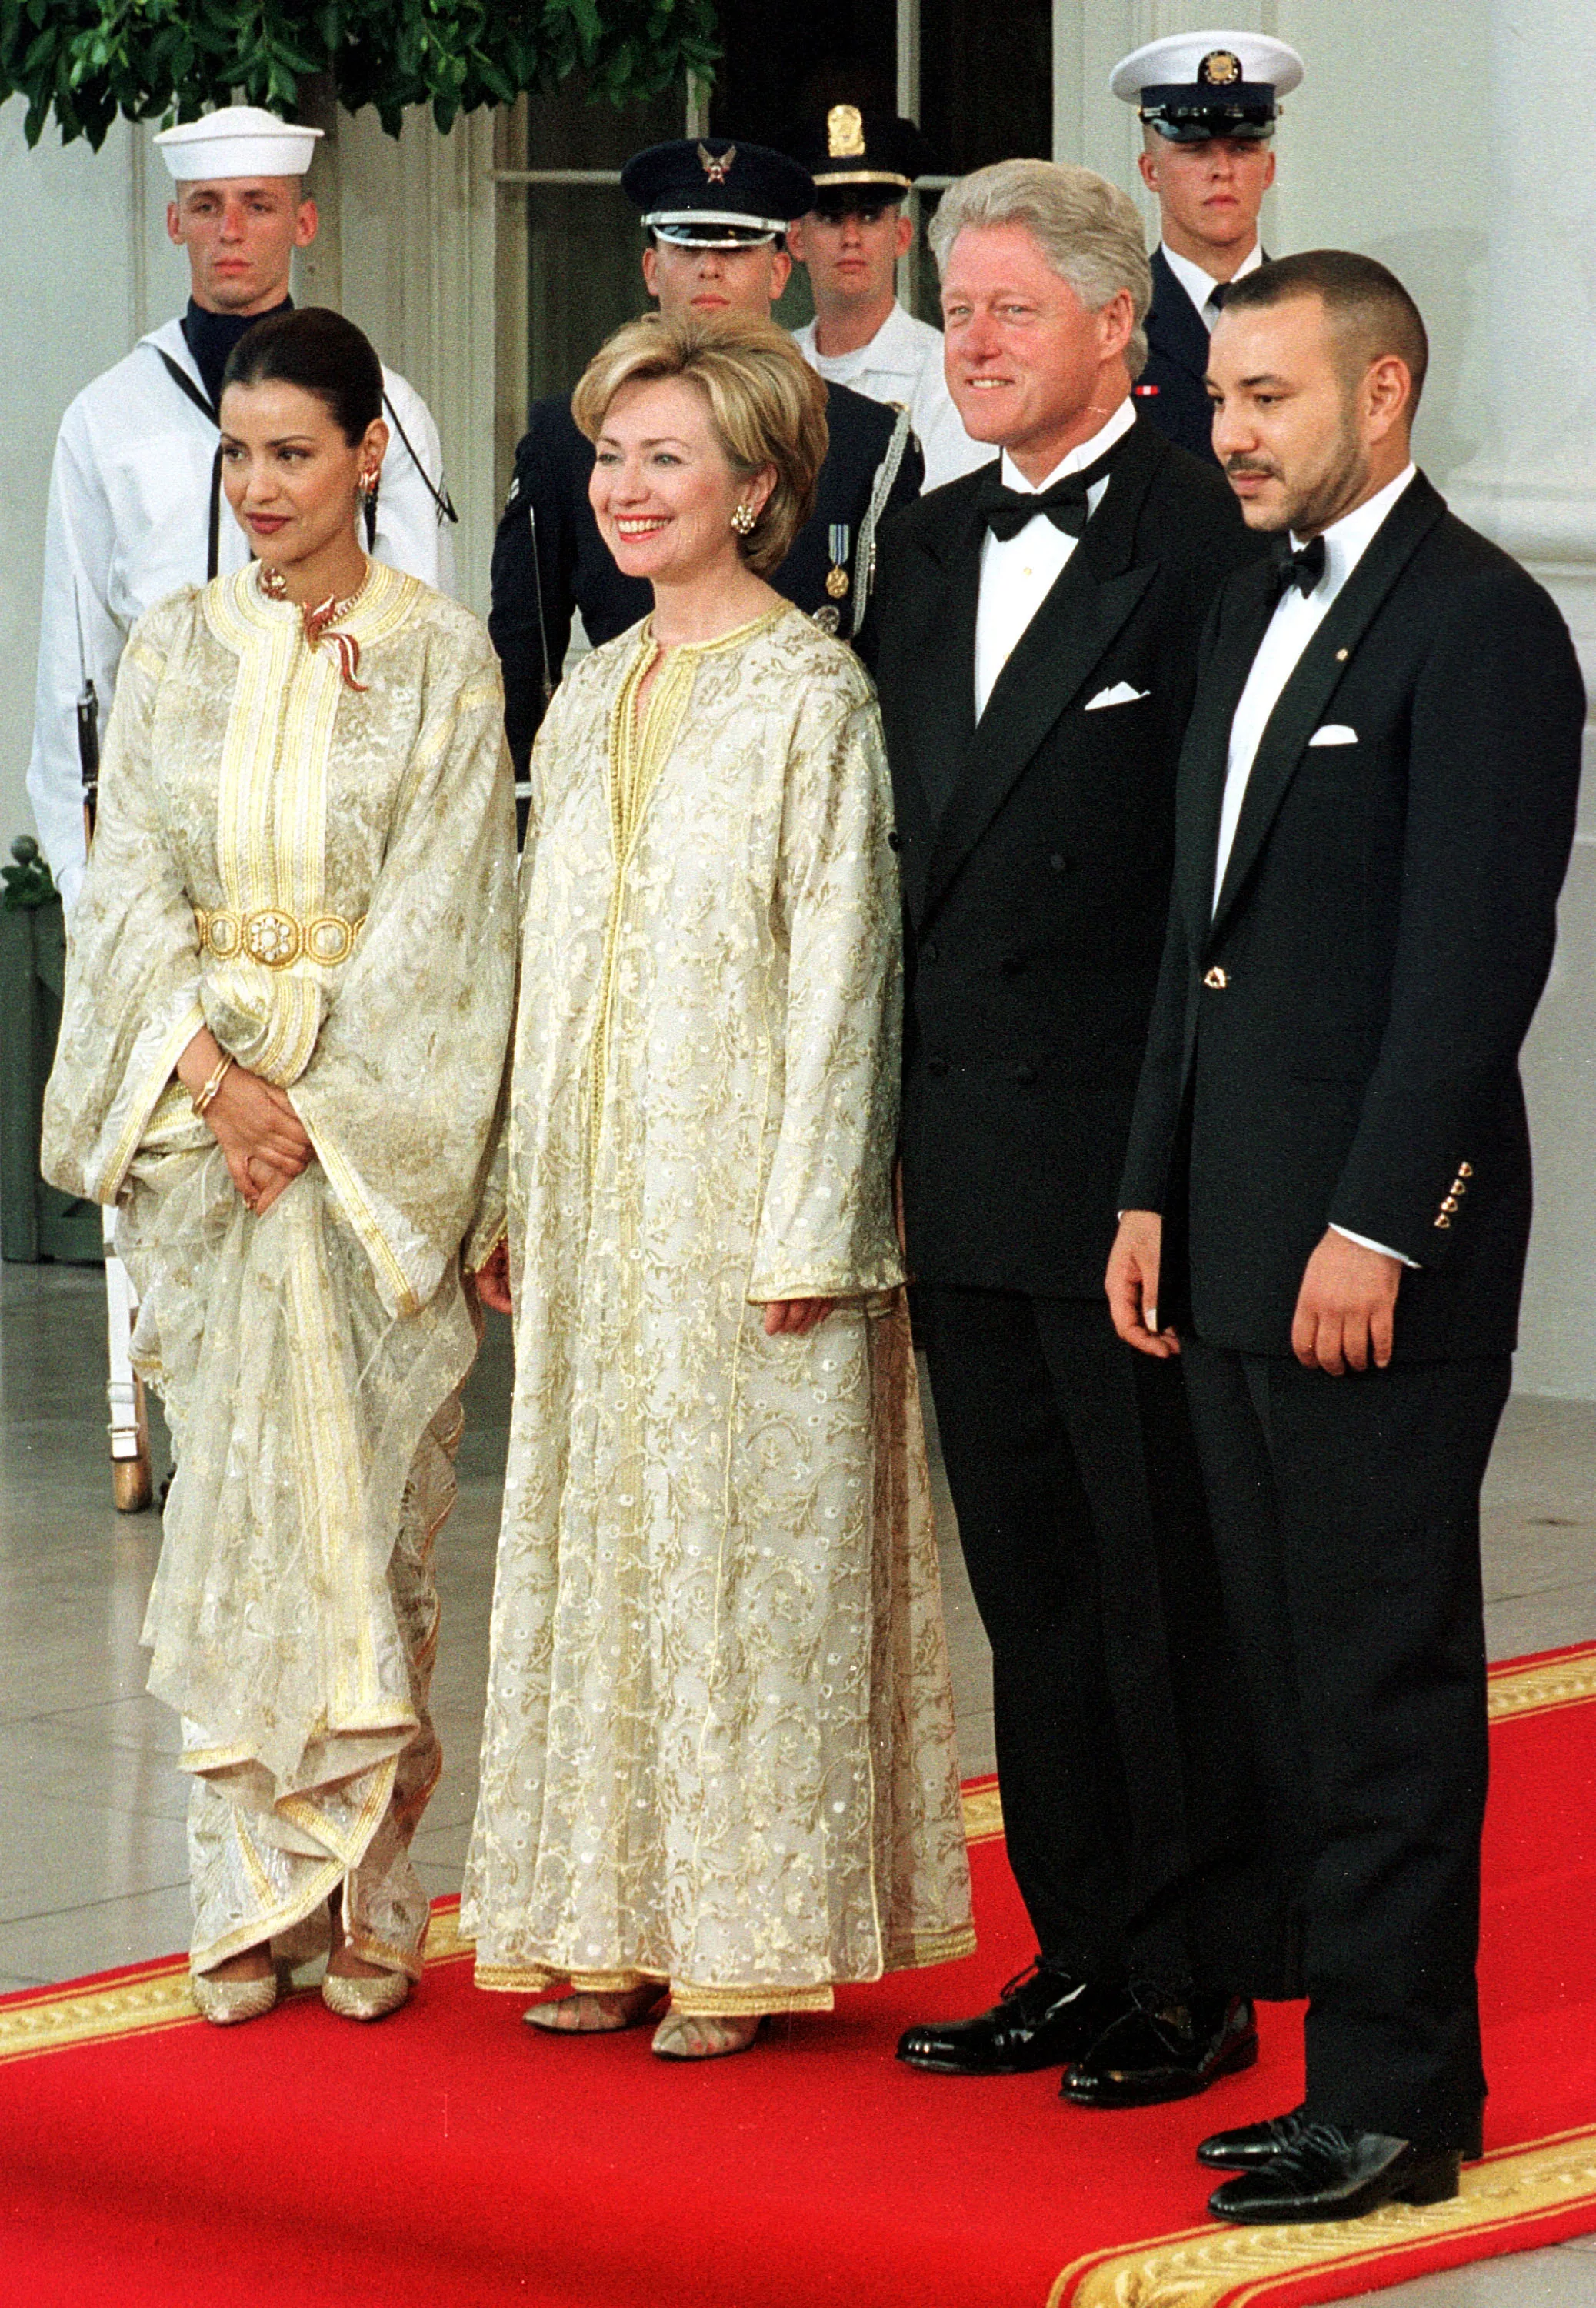 Слева-направо: принцесса Марокко Лалла Мерьем, Хиллари Клинтон, Билл Клинтон и король Марокко Мухаммед VI во время приема в Вашингтоне, 2000